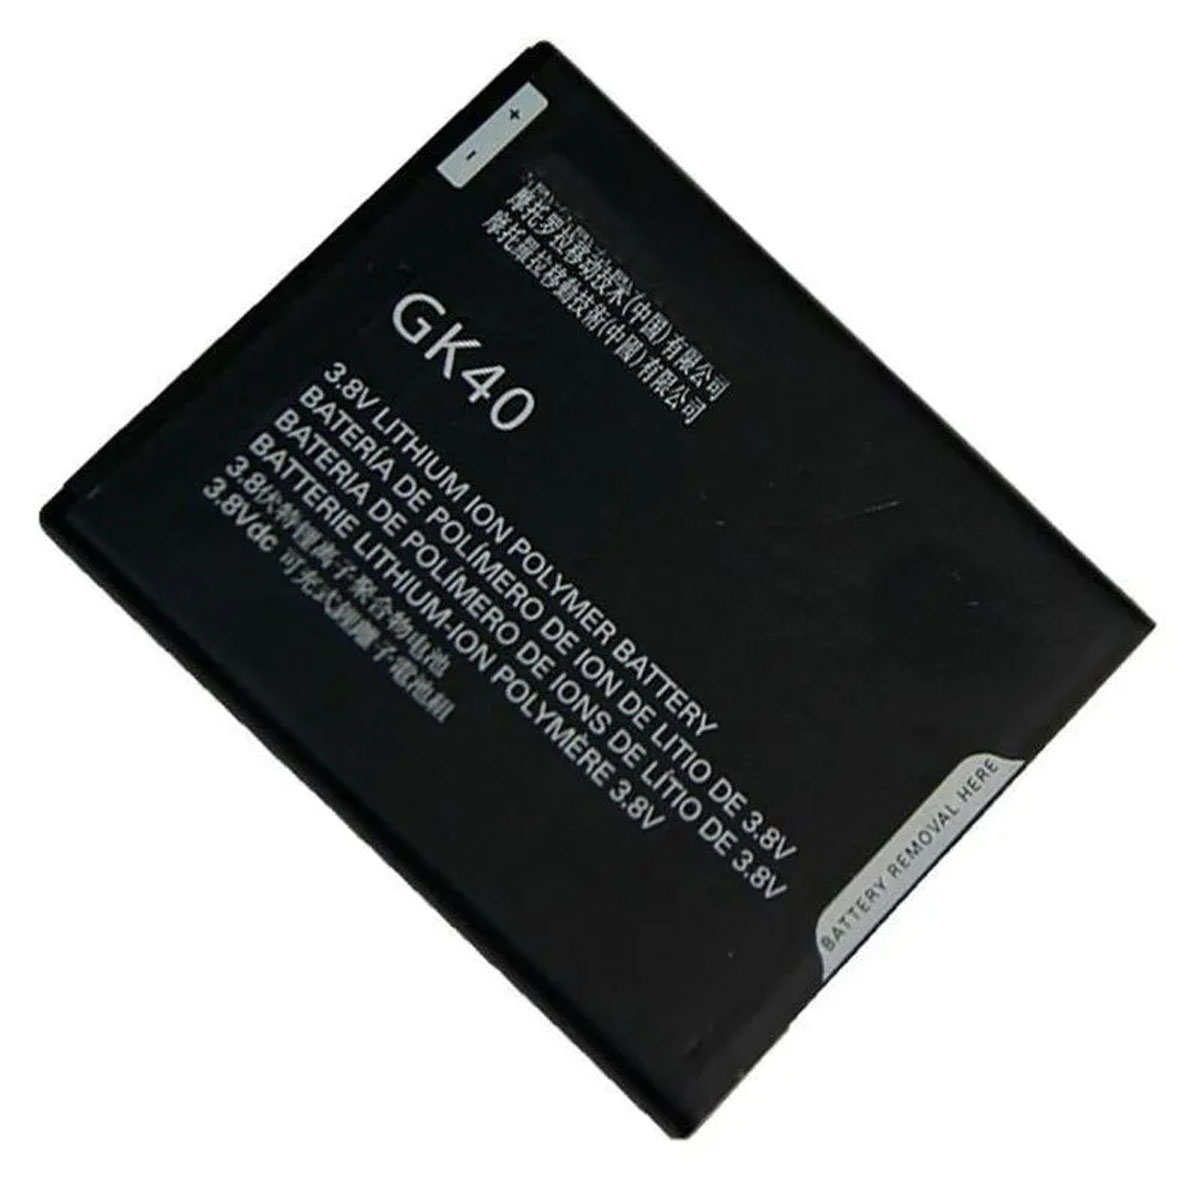 АКБ (Аккумулятор) GK40 для MOTOROLA E4, 2685mAh, цвет черный